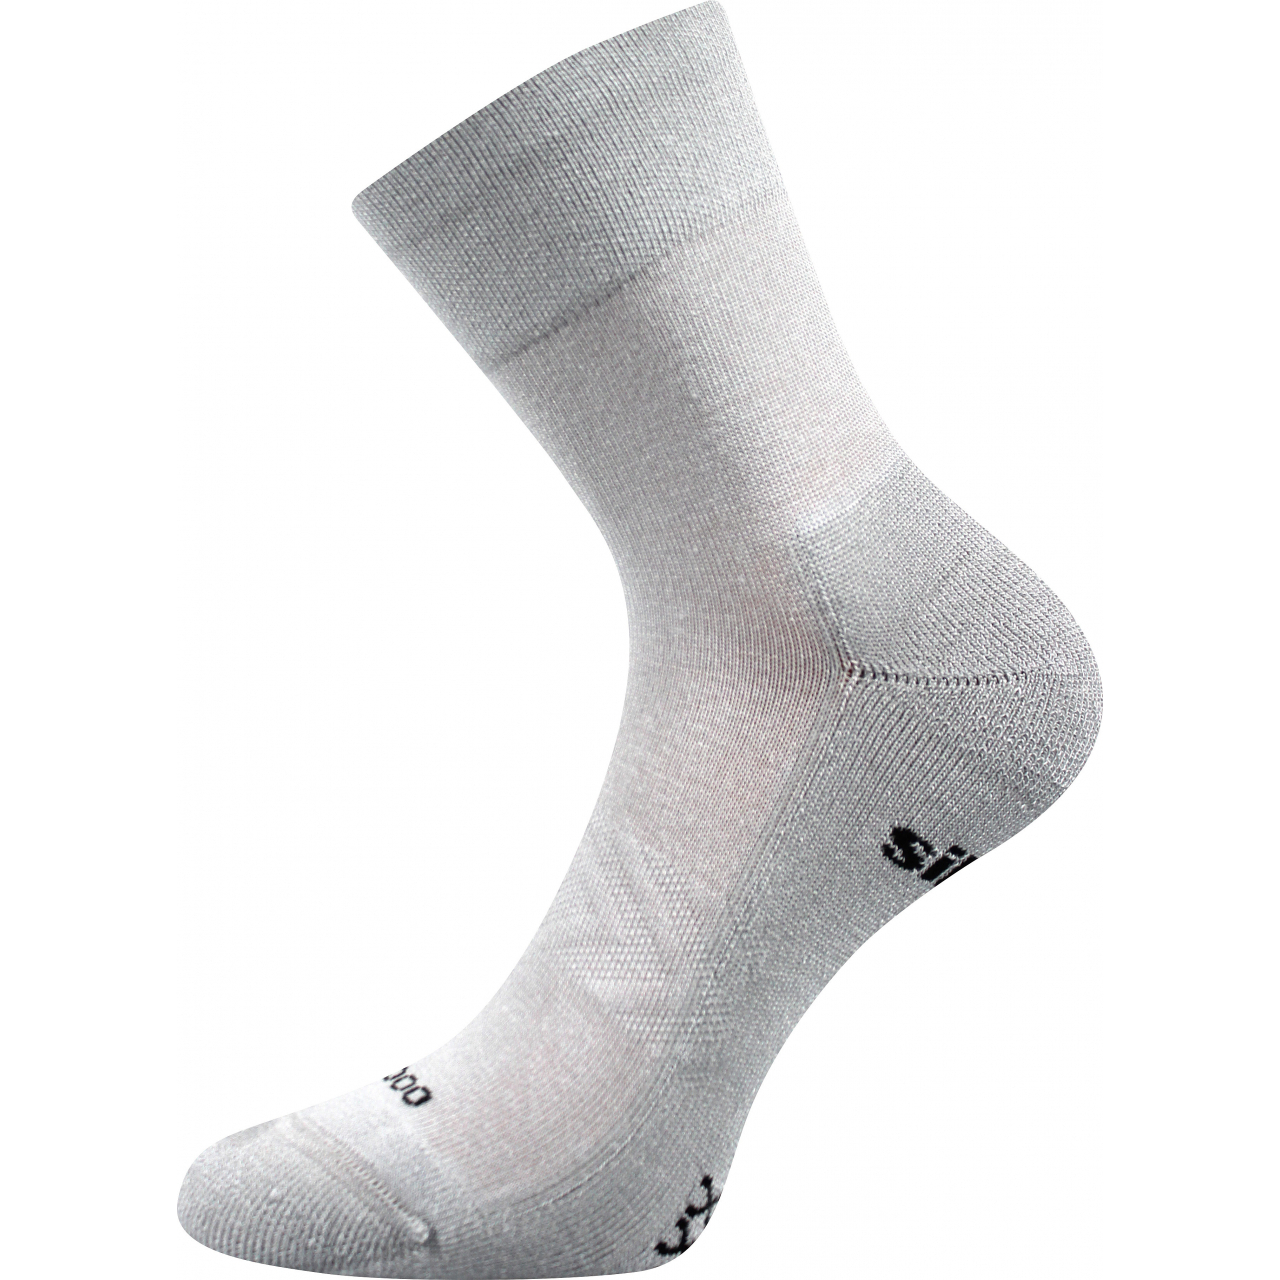 Ponožky sportovní unisex Voxx Esencis - světle šedé, 43-46